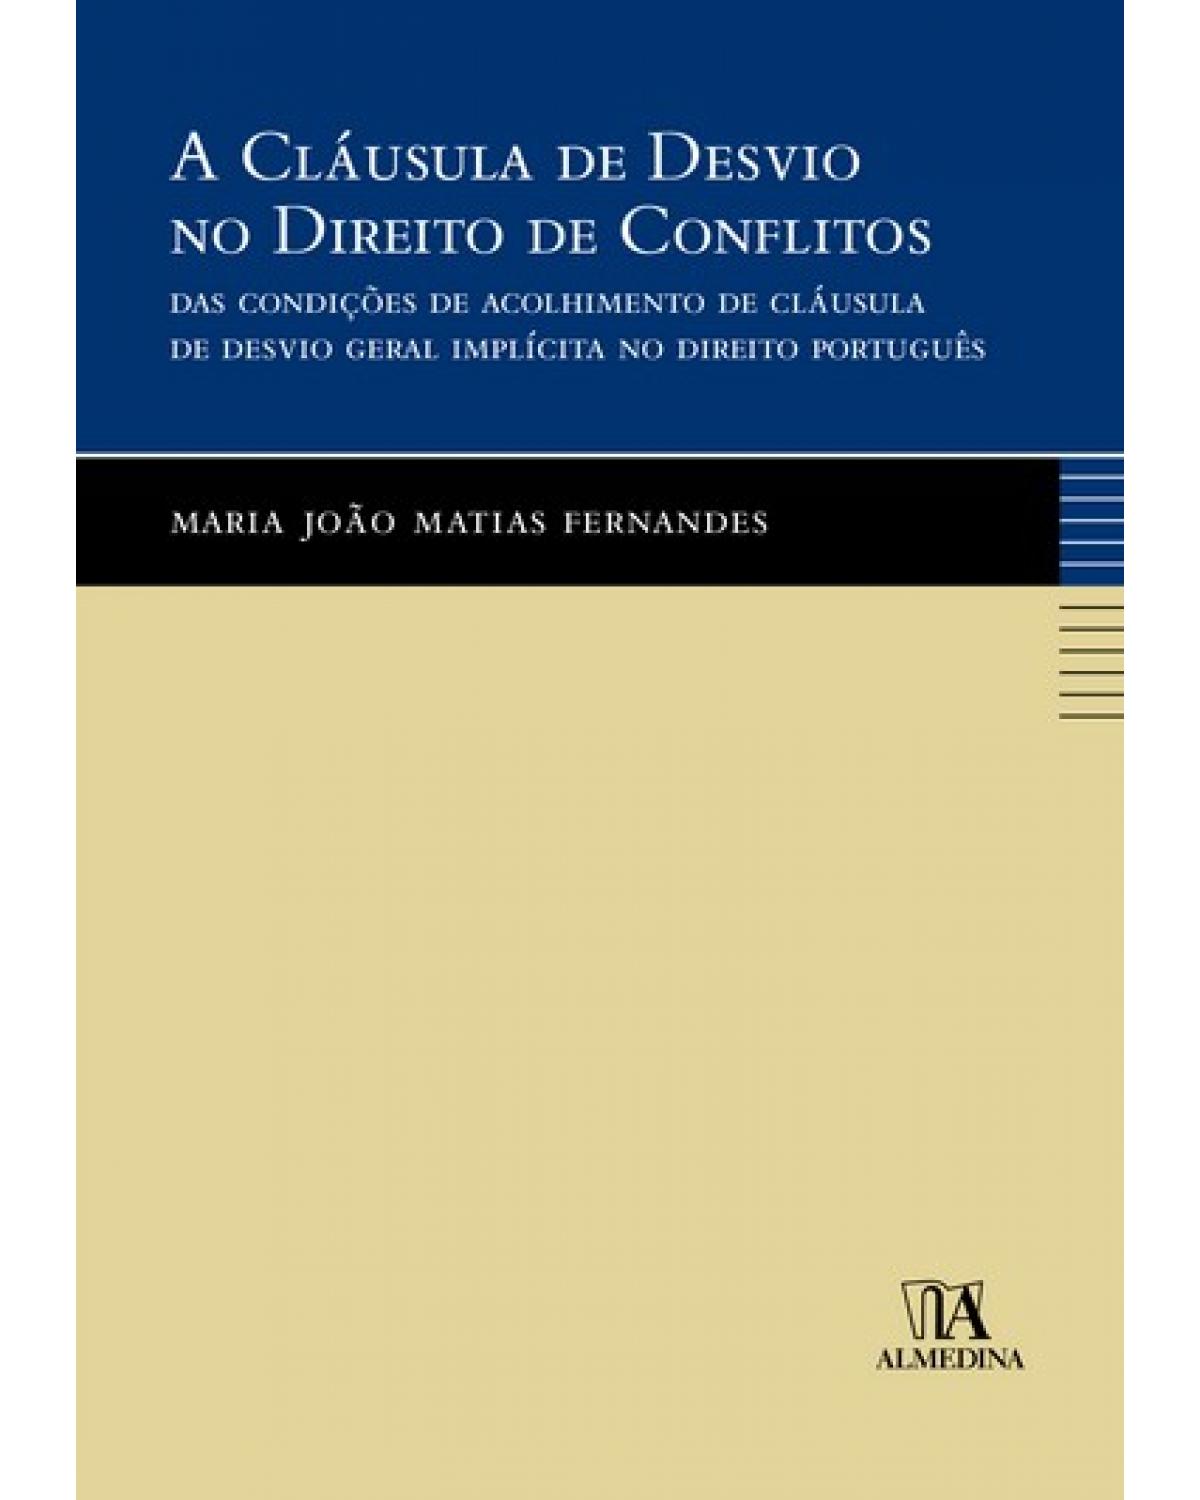 A cláusula de desvio no direito de conflitos: das condições de acolhimento de cláusula de desvio geral implícita no direito português - 1ª Edição | 2007